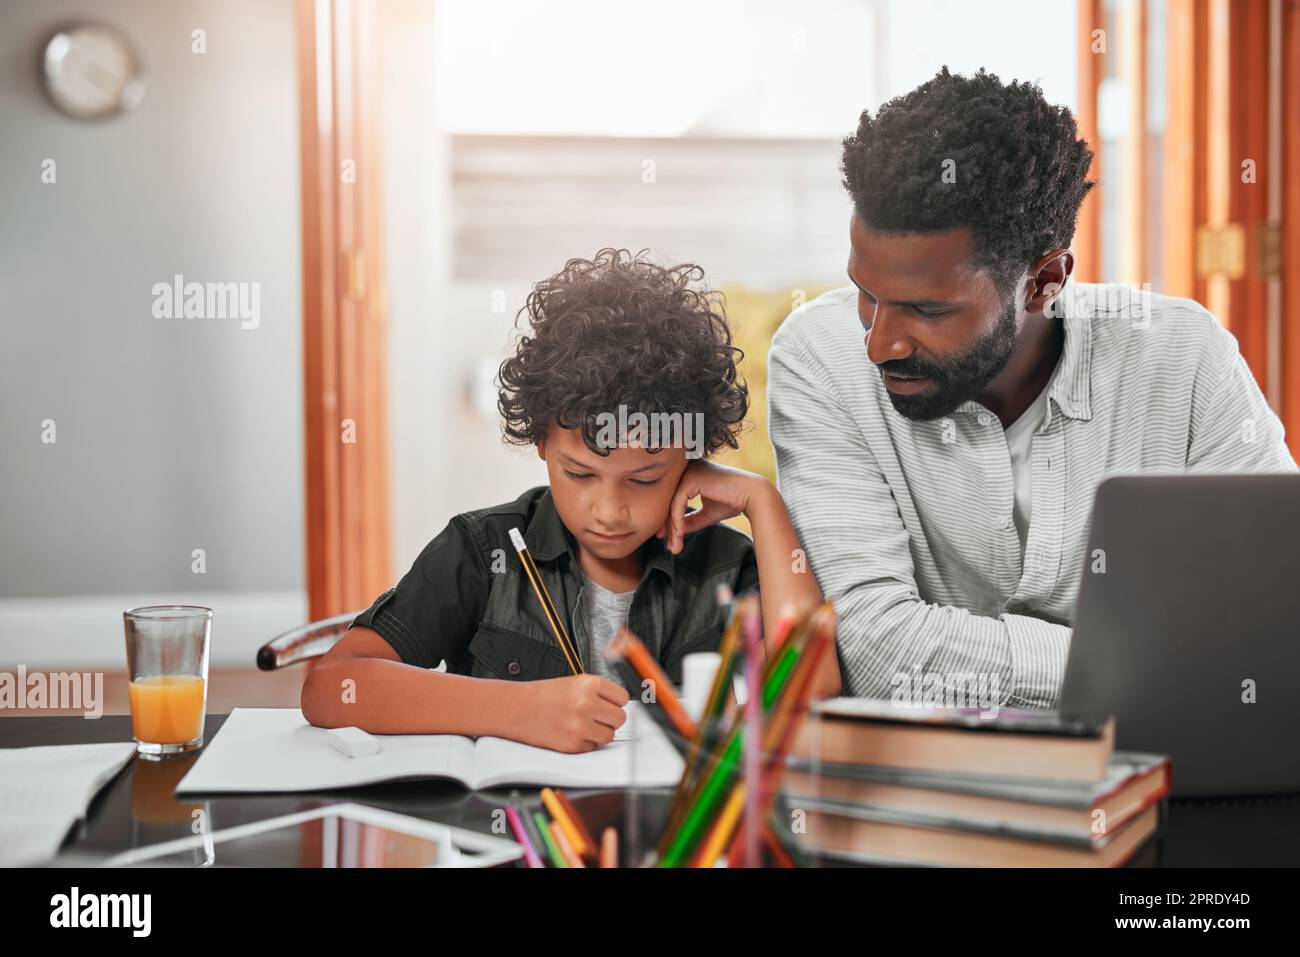 Finden Sie die Zeit, um Ihre Kinder zu unterstützen und zu ermutigen. Ein Mann hilft seinem Sohn bei seinen Hausaufgaben. Stockfoto